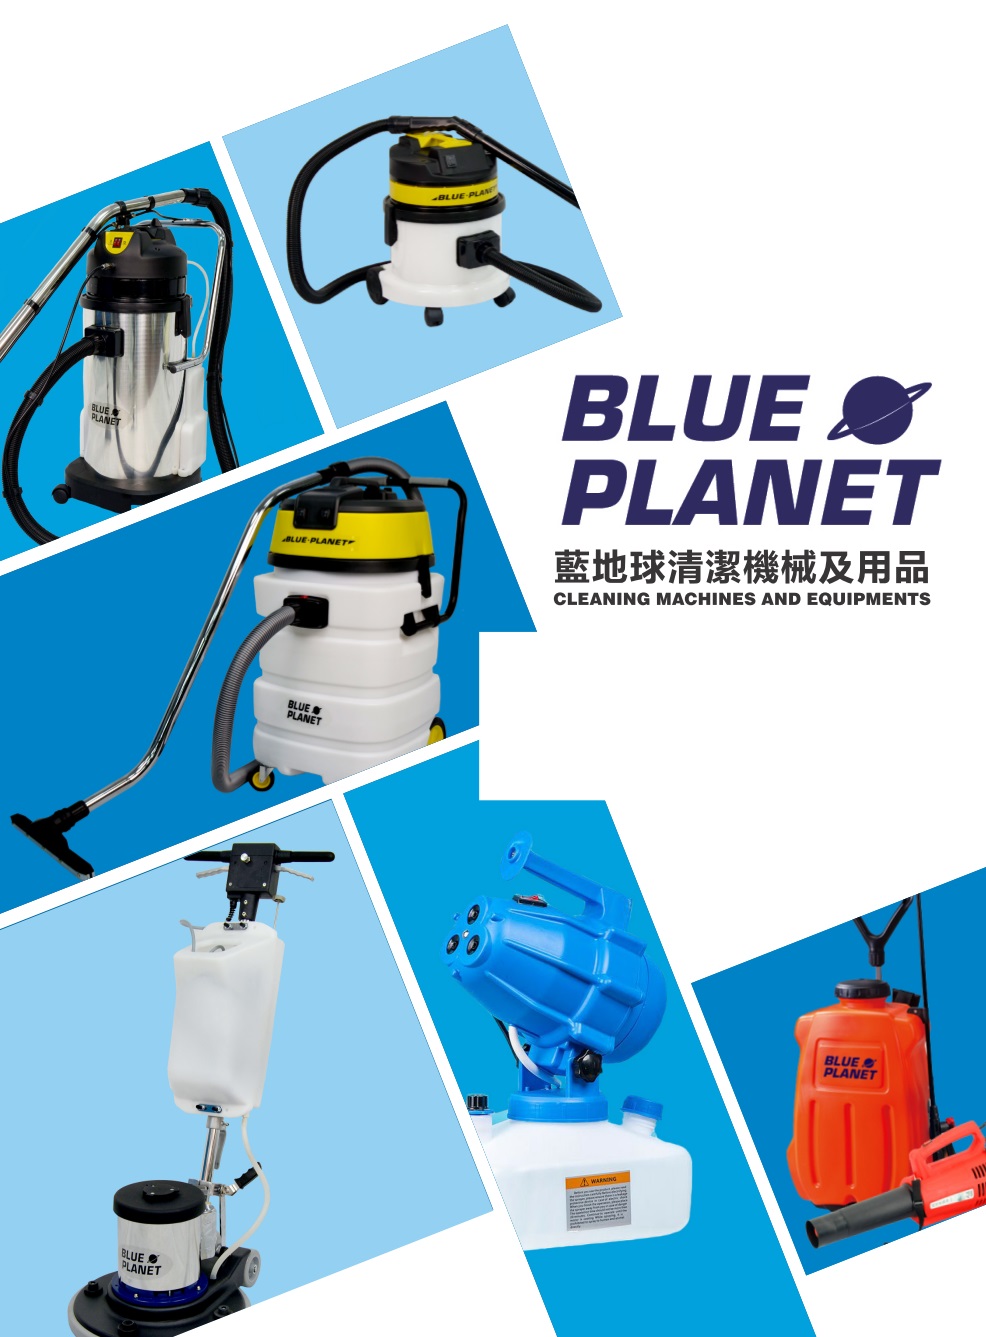 藍地球Blue-Planet吸塵吸水機及蝸牛吹風機系列-吸水吸塵機-工業吸塵吸水機-商用吸水機-強力吸水機-吸水機推薦-吸水機牌子-吸水機Vacuum-Cleaner